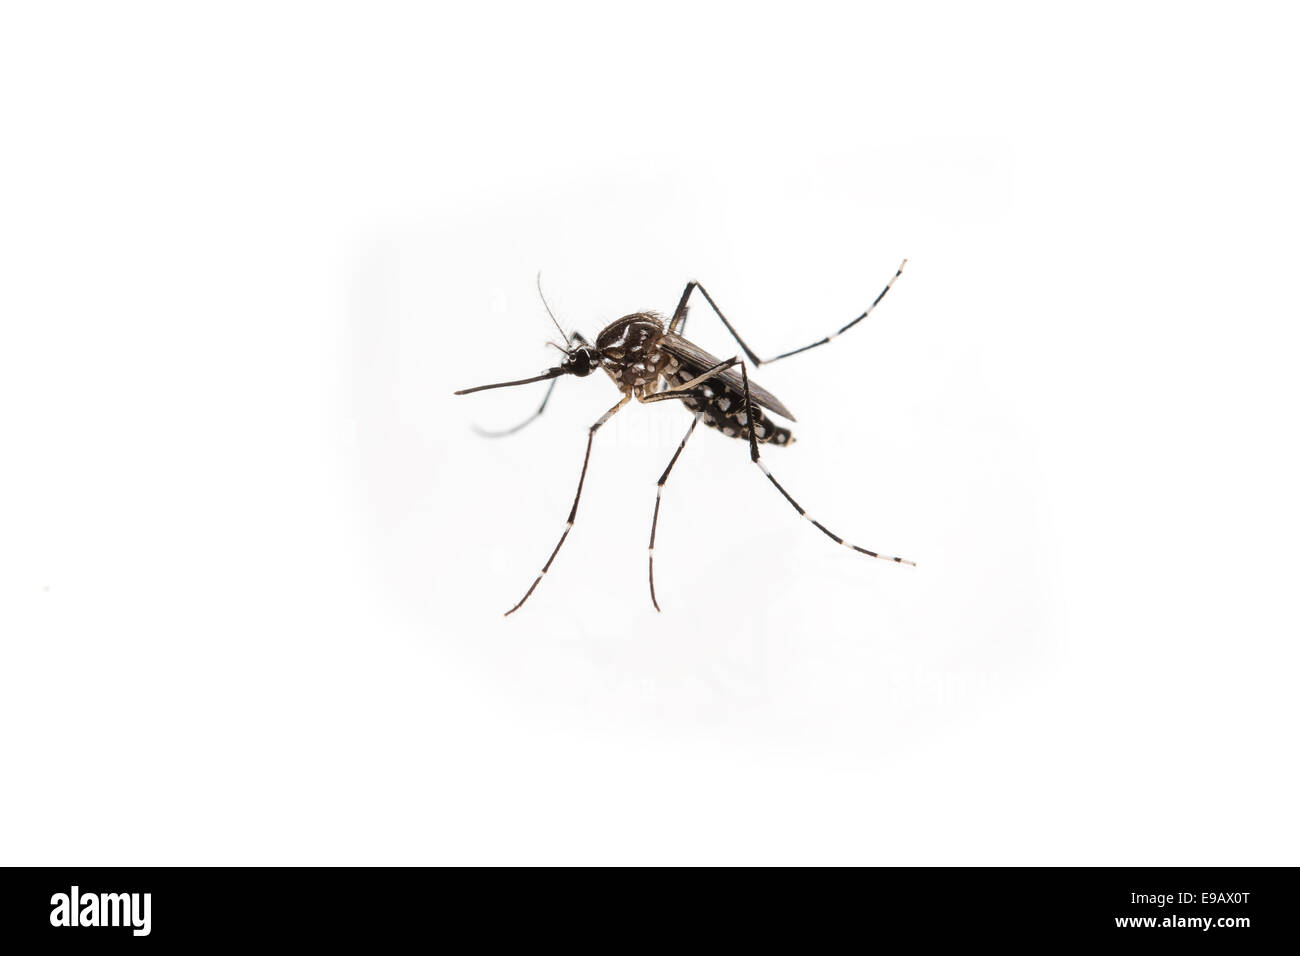 Gelbfieber, Dengue-Fieber, Chikungunya und Zika Virus Mücke Aedes aegypti Stockfoto